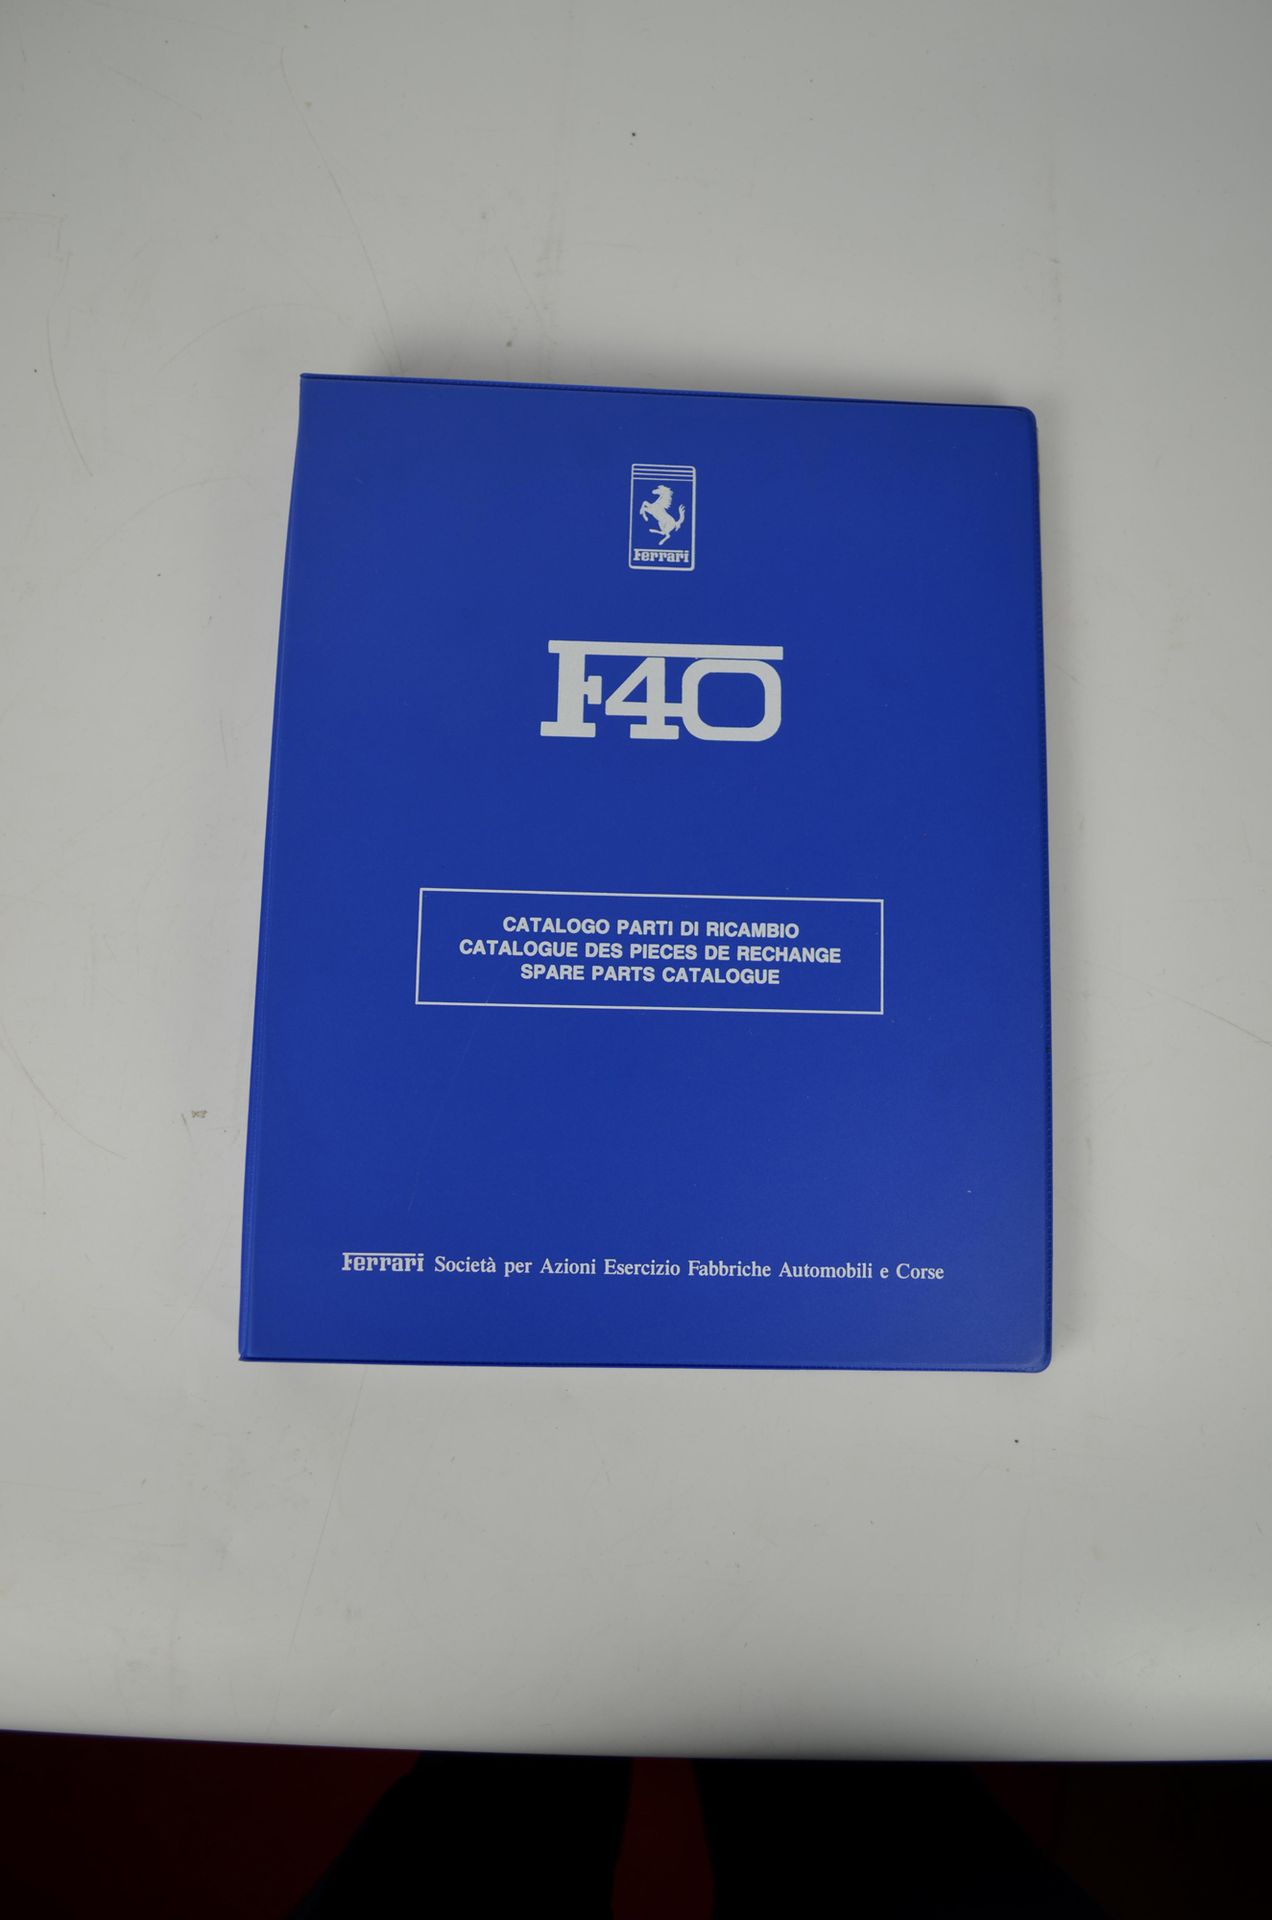 Catalogue de pièces de rechange F40 F40 Spare Parts Catalogue